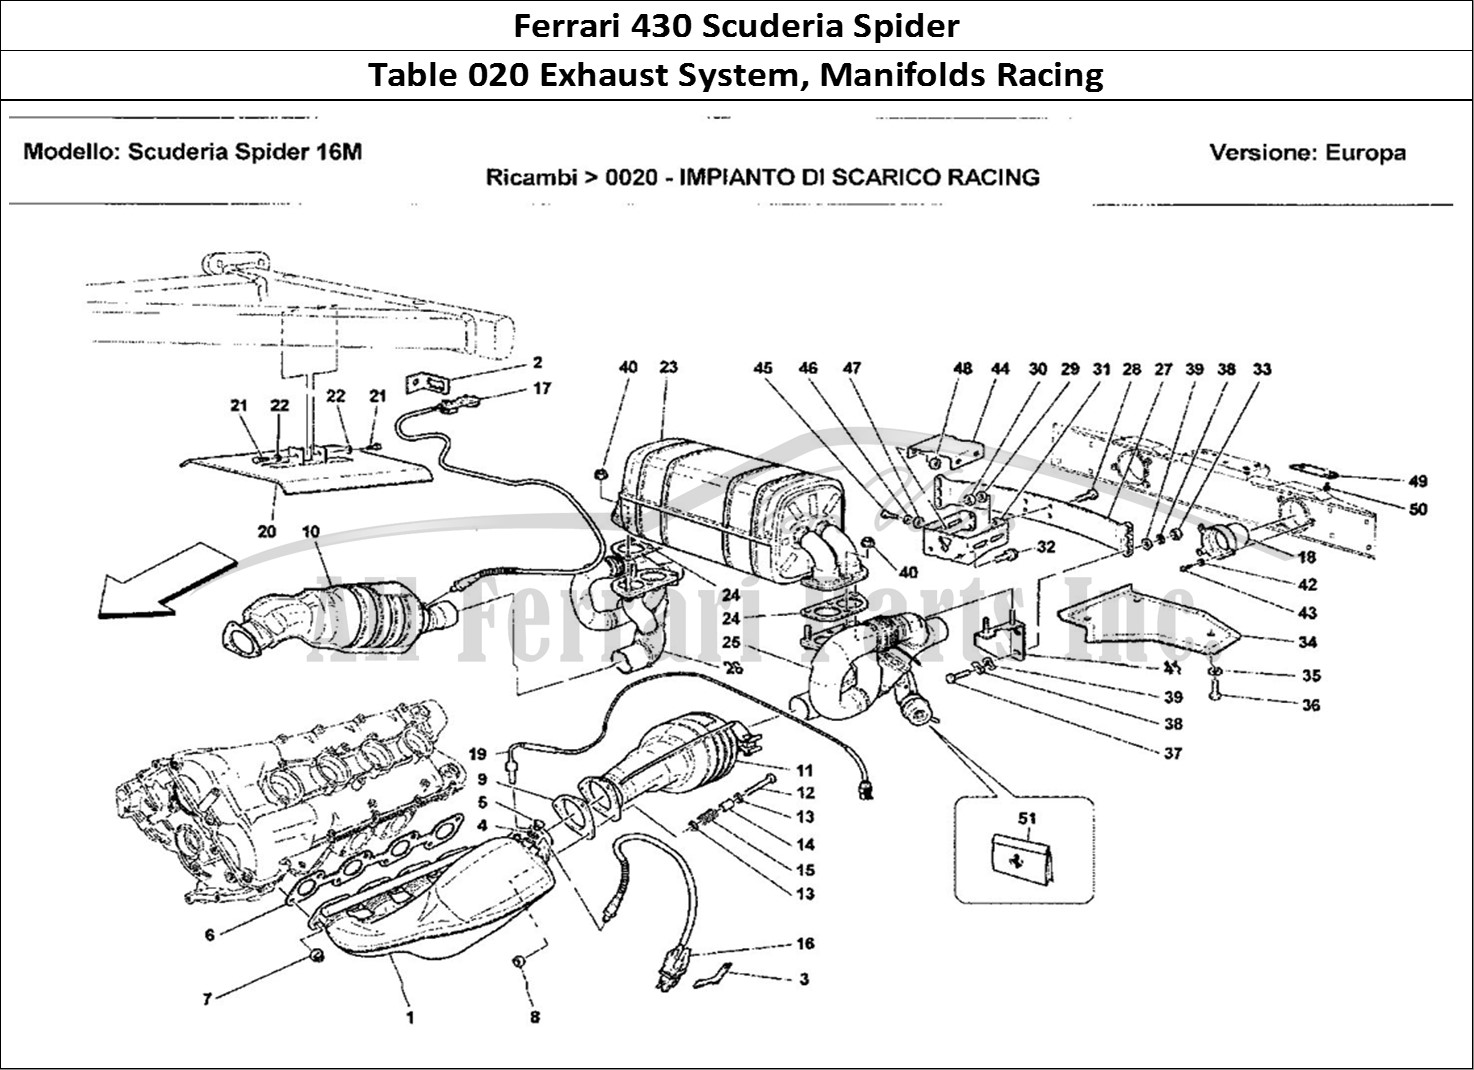 Ferrari Parts Ferrari 430 Scuderia Spider 16M Page 020 Impianto di Scarico Racin